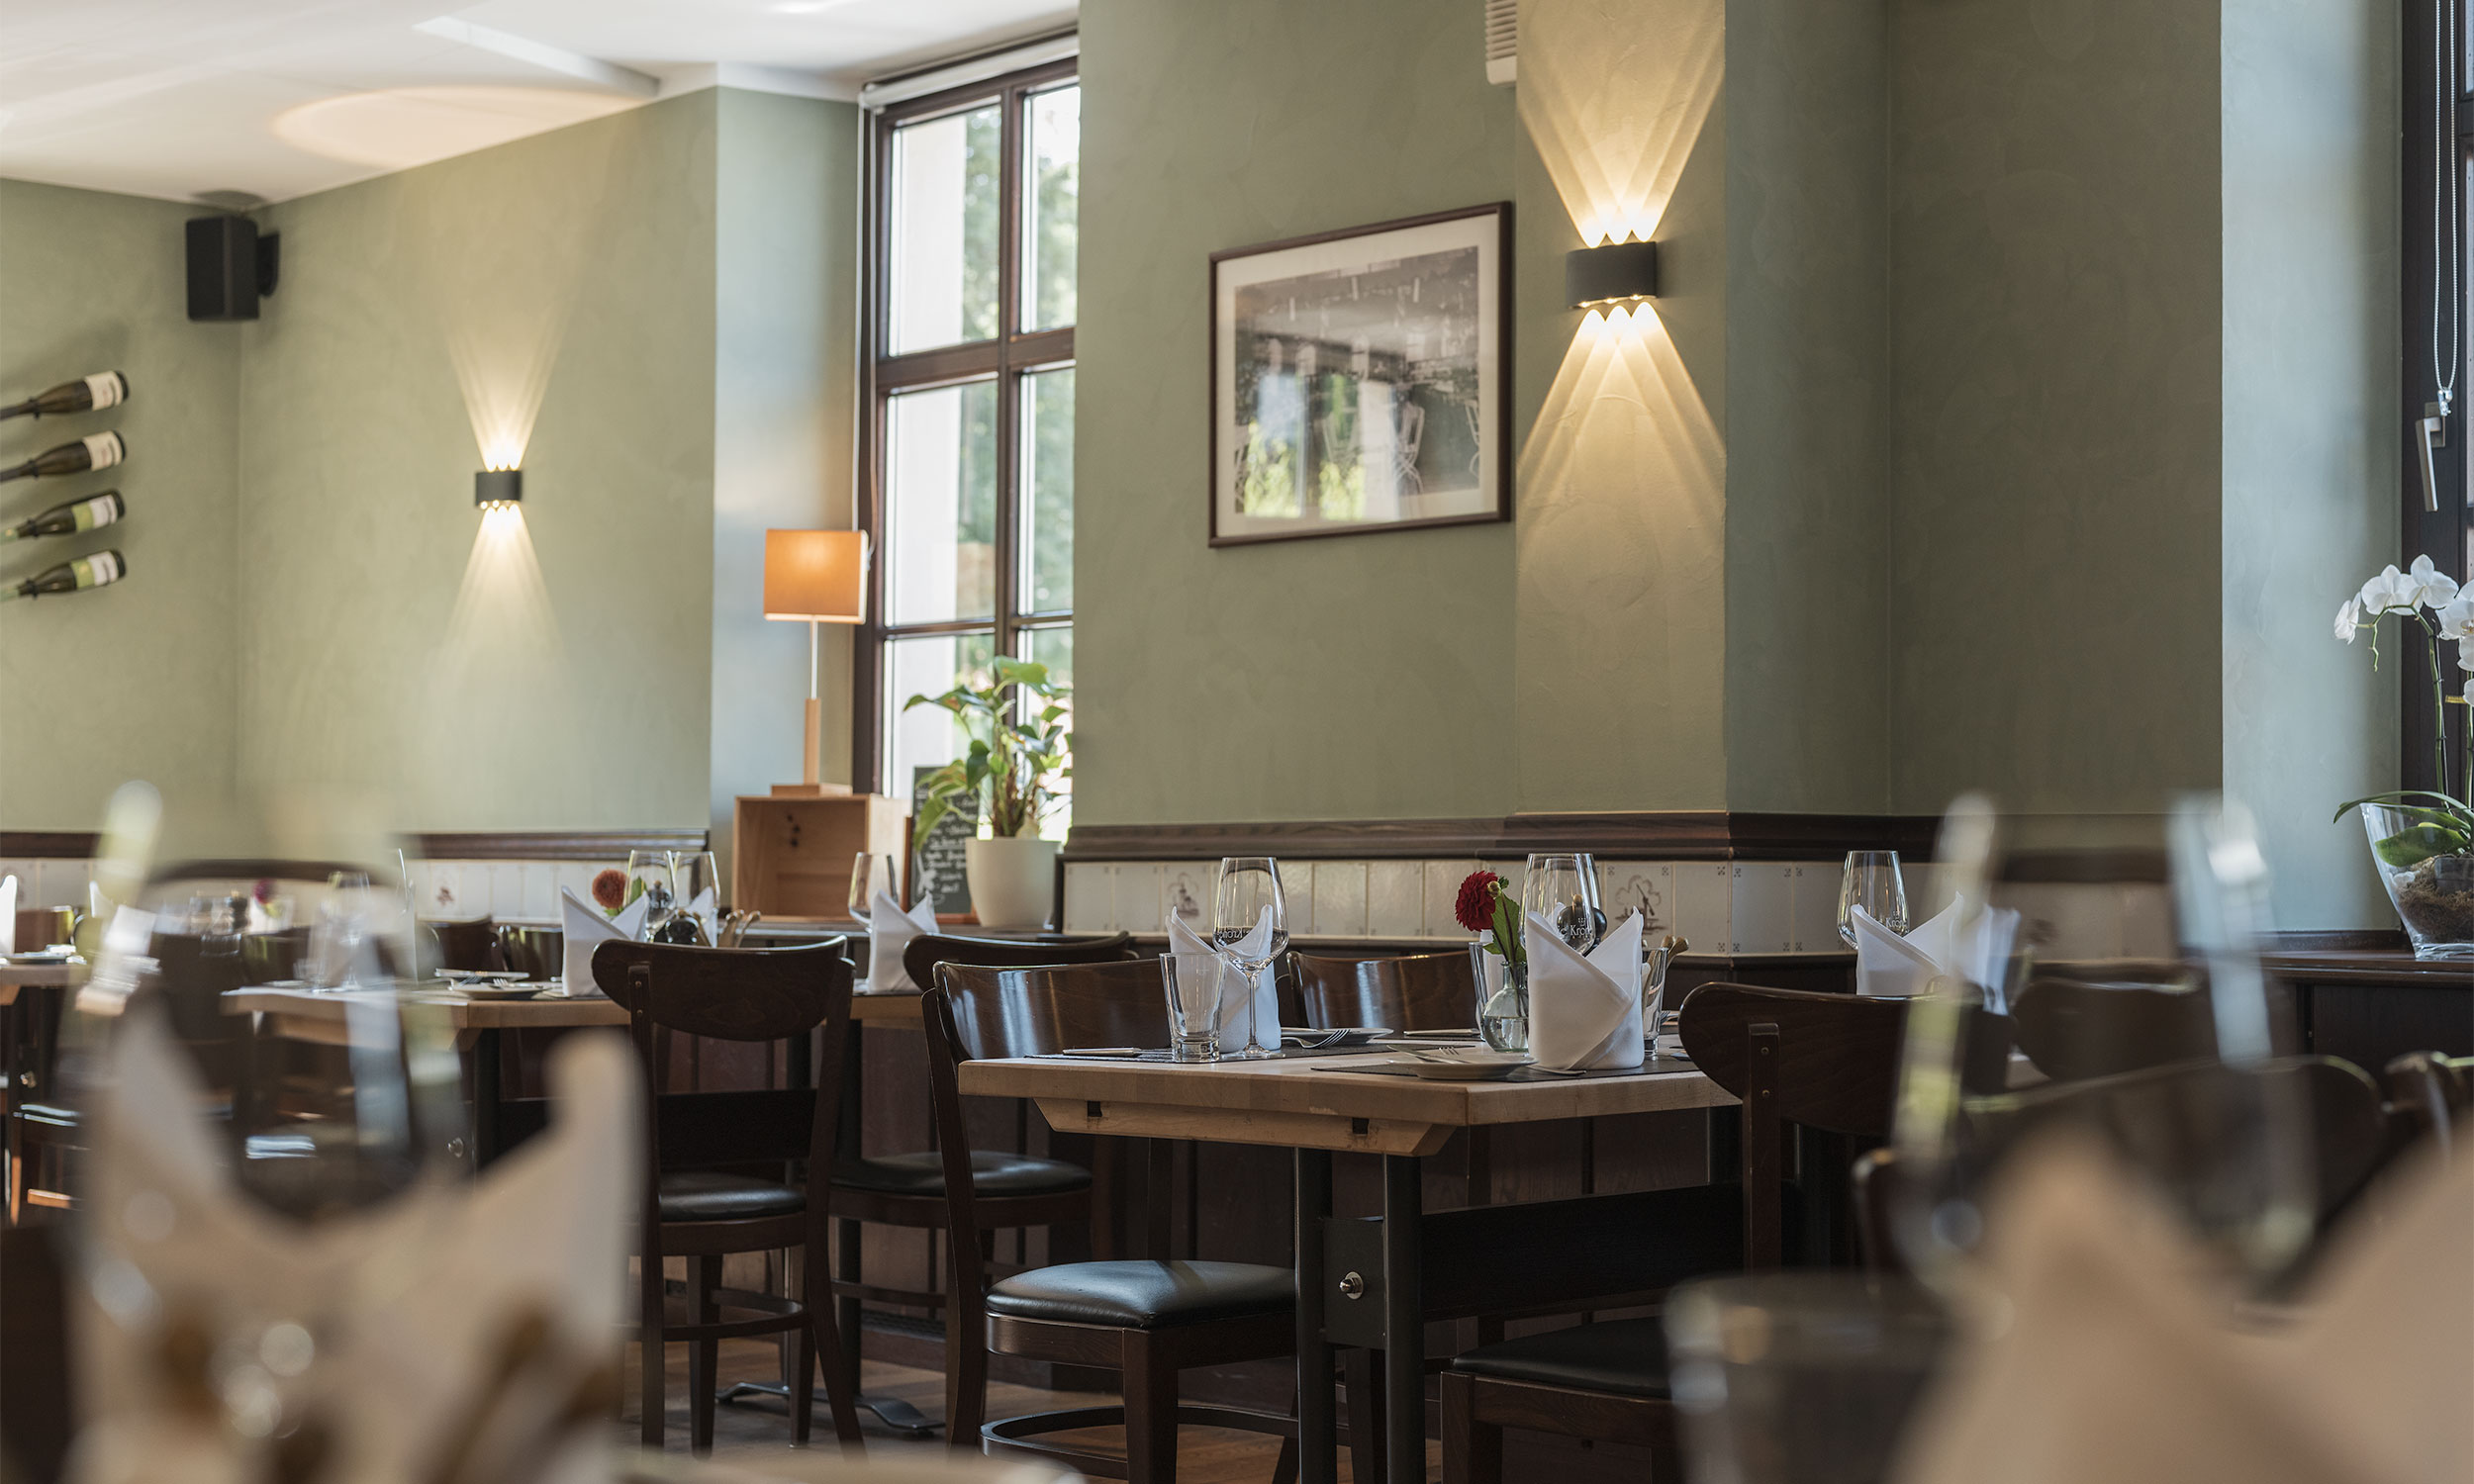 Blick in den schön gestalteten Speiseraum des Restaurants Die Krone Homberg in Ratingen. Die Tische sind mit Gläsern, Besteck und Servietten eingedeckt